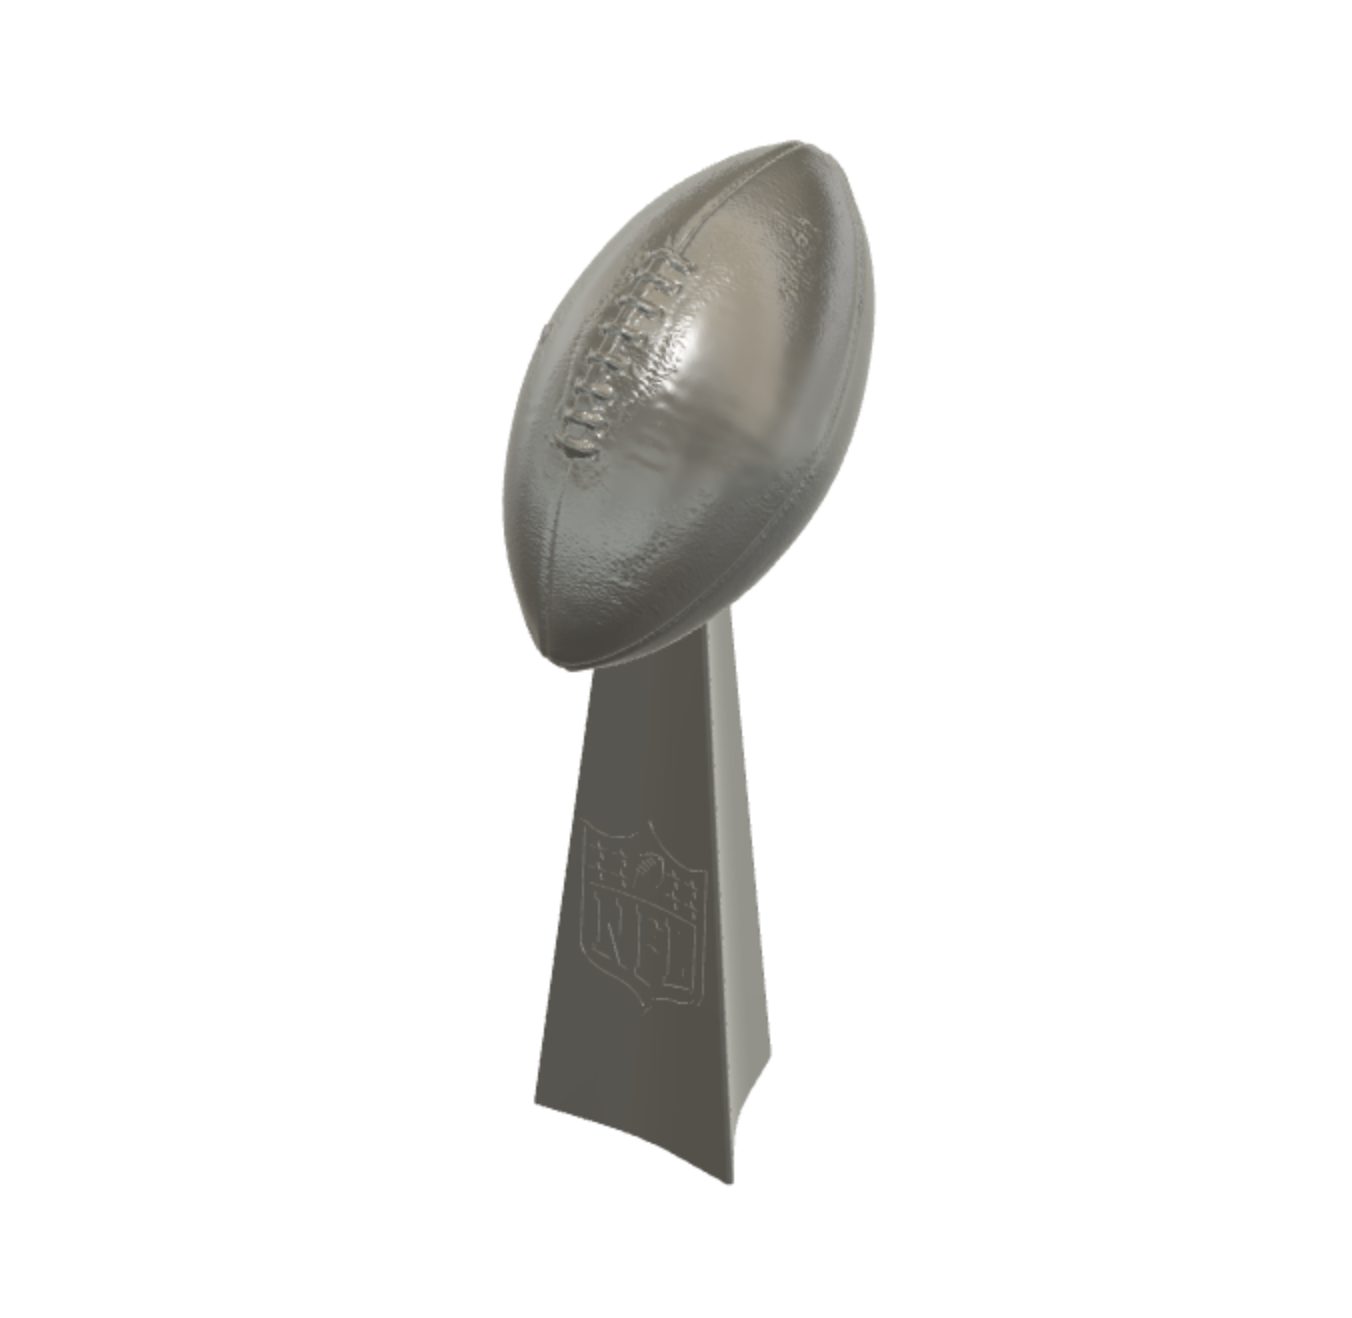 NFL Superbowl Trophy